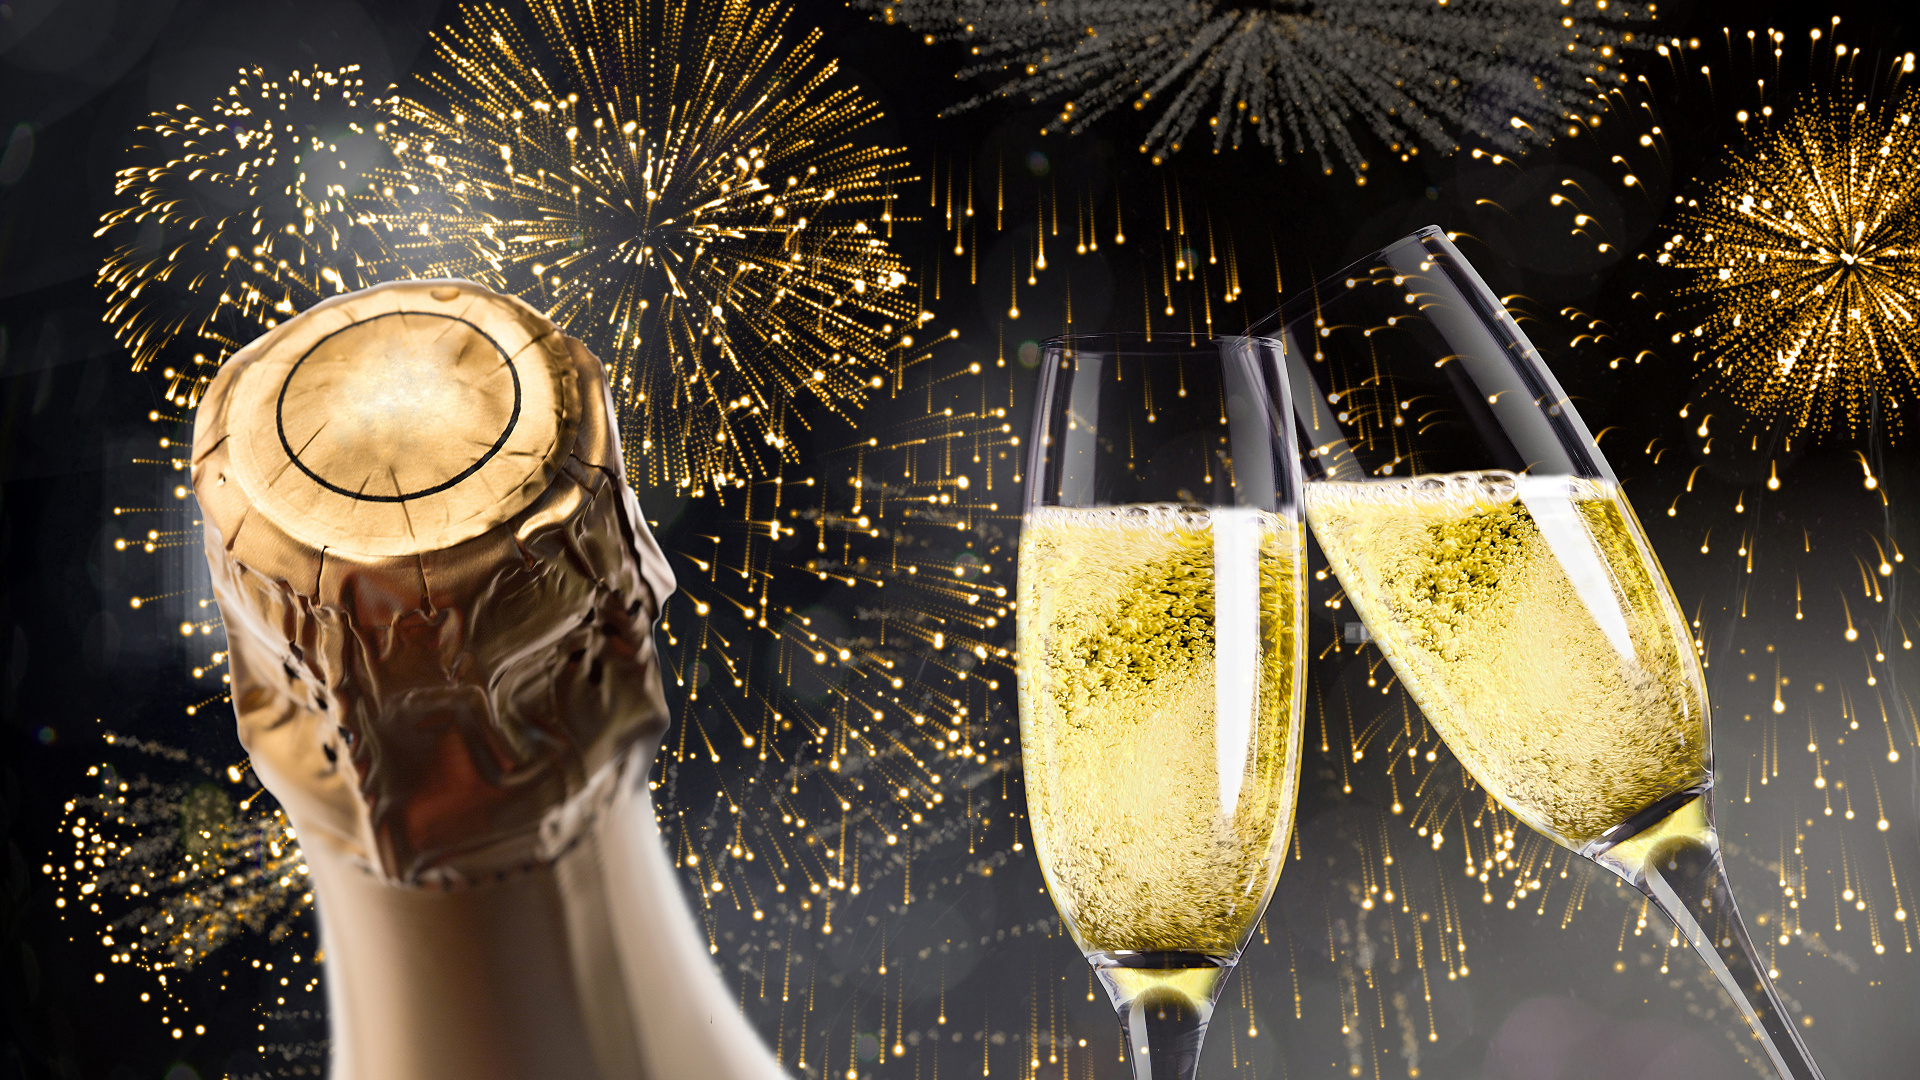 新年前夕, 香槟, 新的一年, 缔约方, 新年当天 壁纸 1920x1080 允许